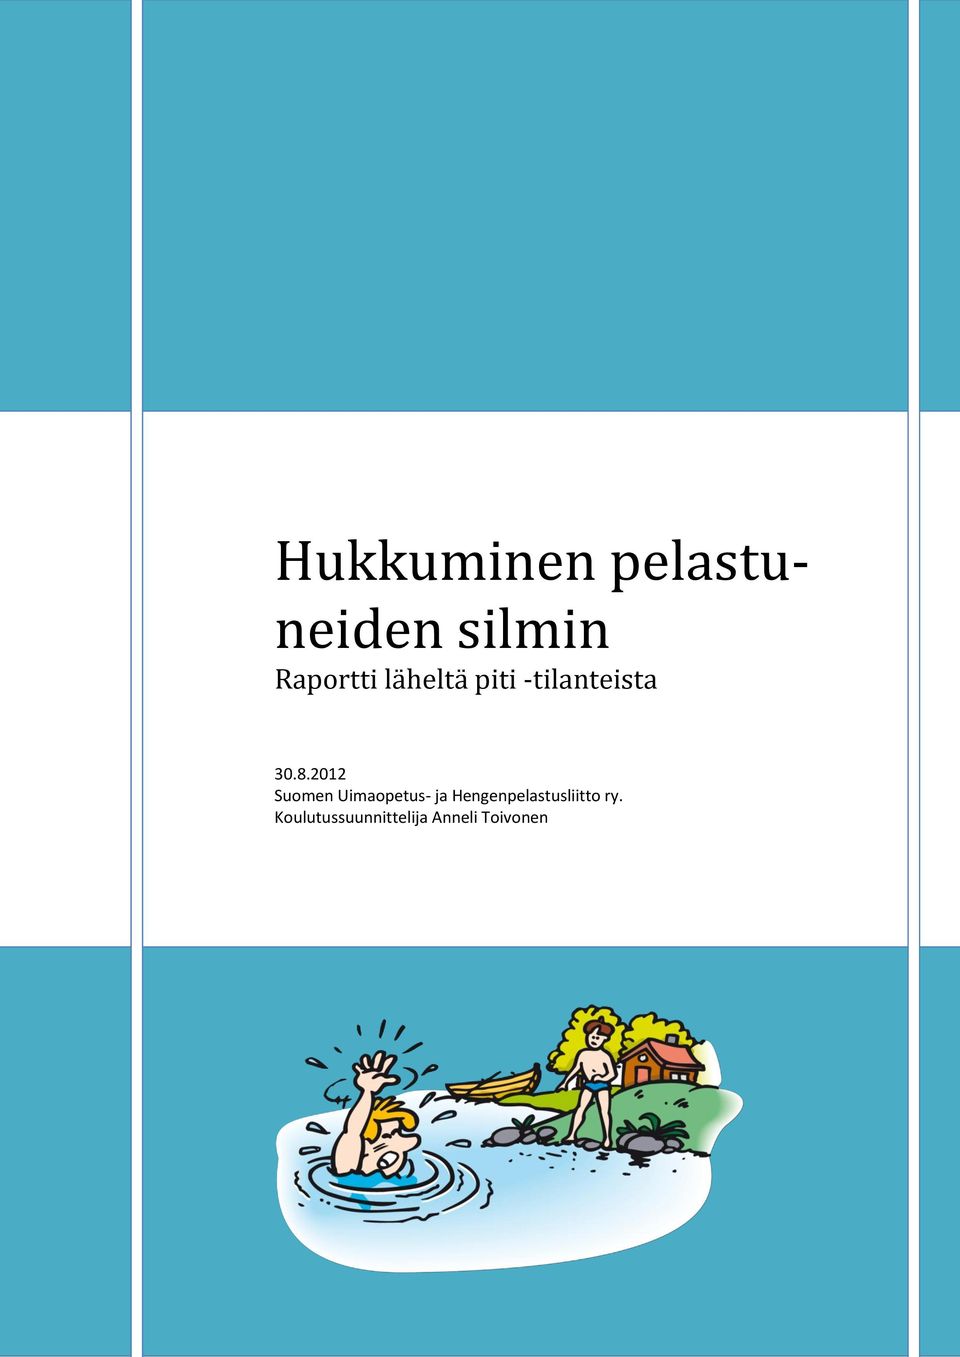 2012 Suomen Uimaopetus- ja